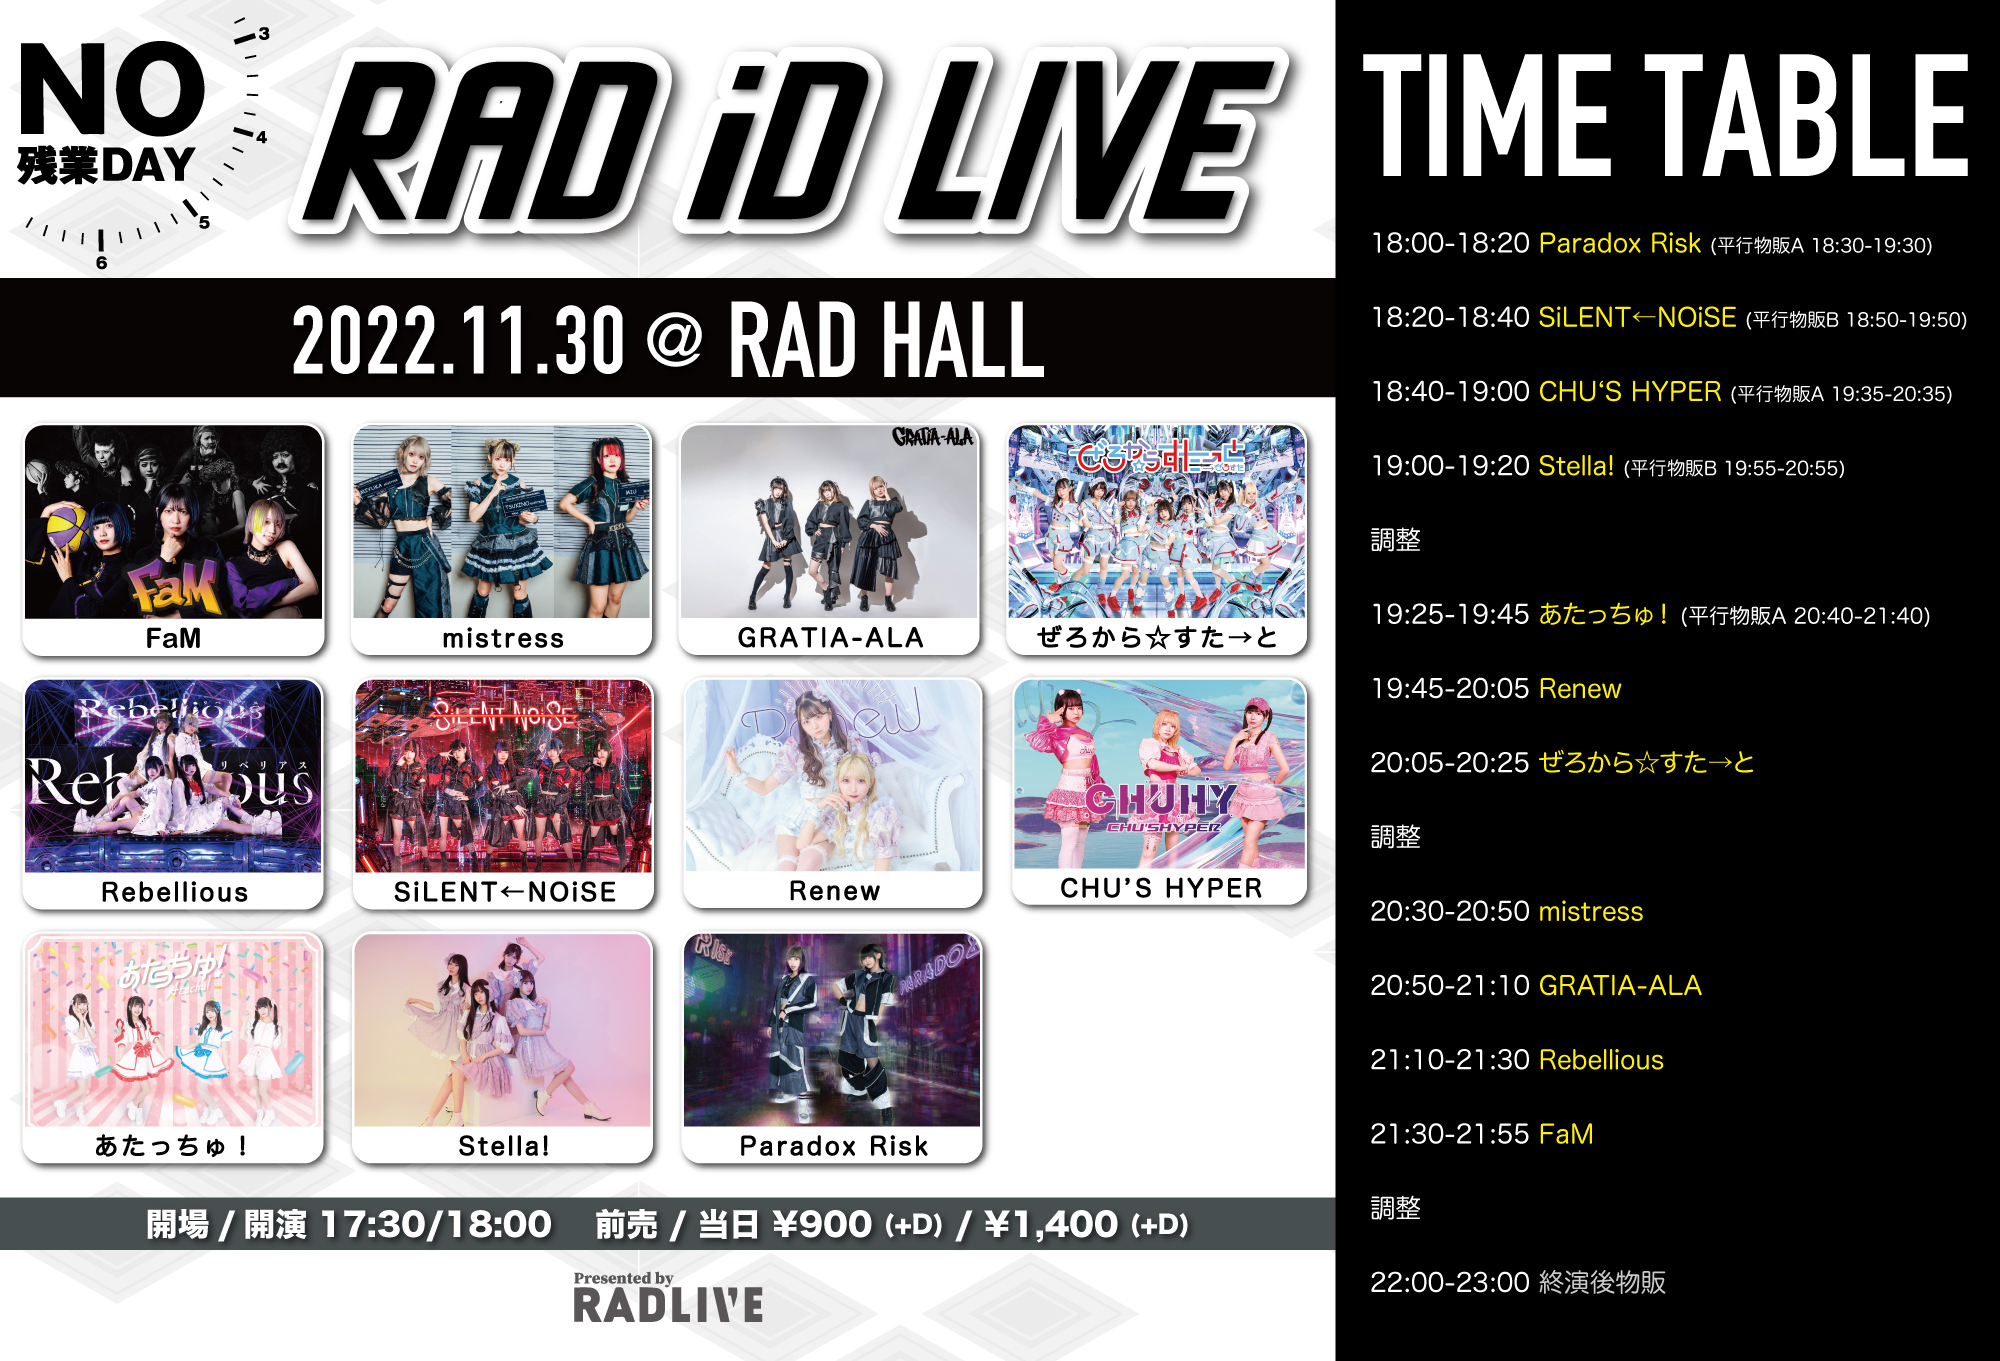 RAD iD LIVE -NO 残業DAY-